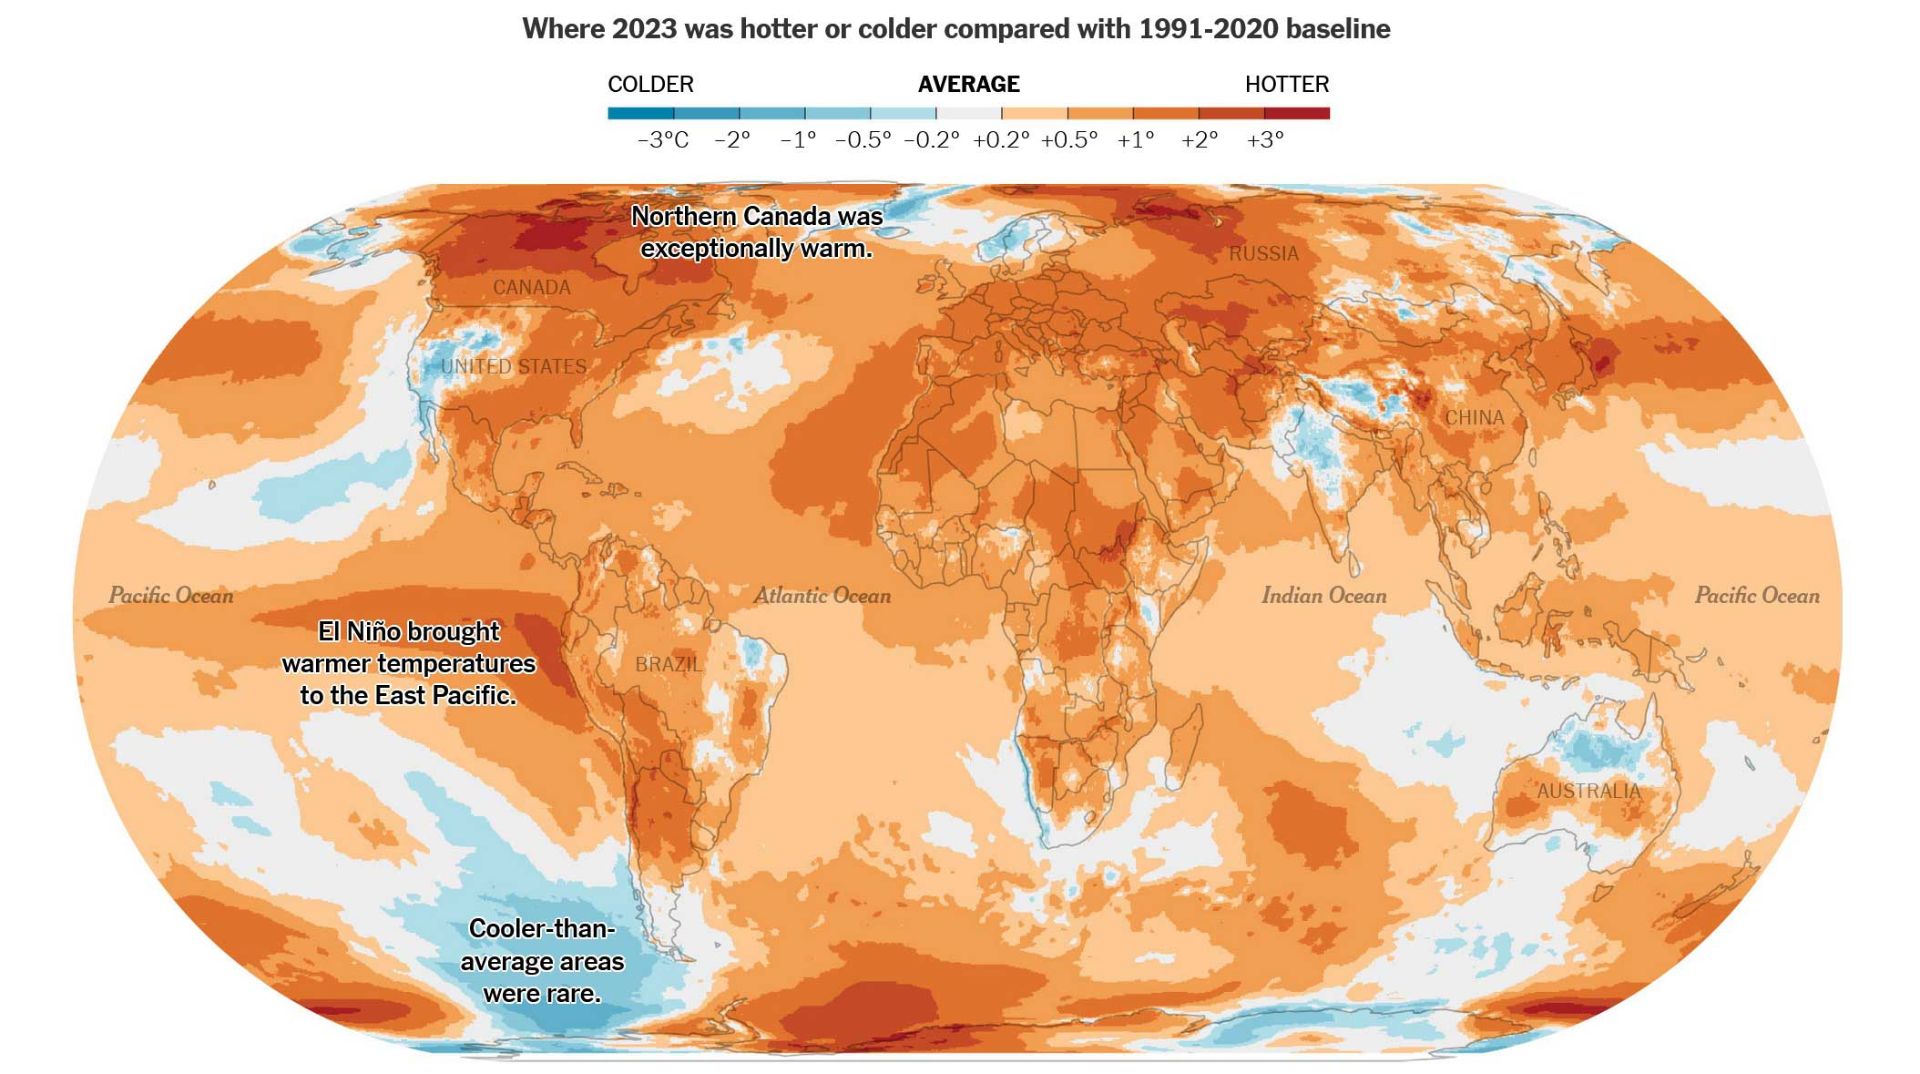 مقایسه دمای مناطق جهان در ۲۰۲۳ با میانگین دمای ۱۹۹۱ تا ۲۰۲۰